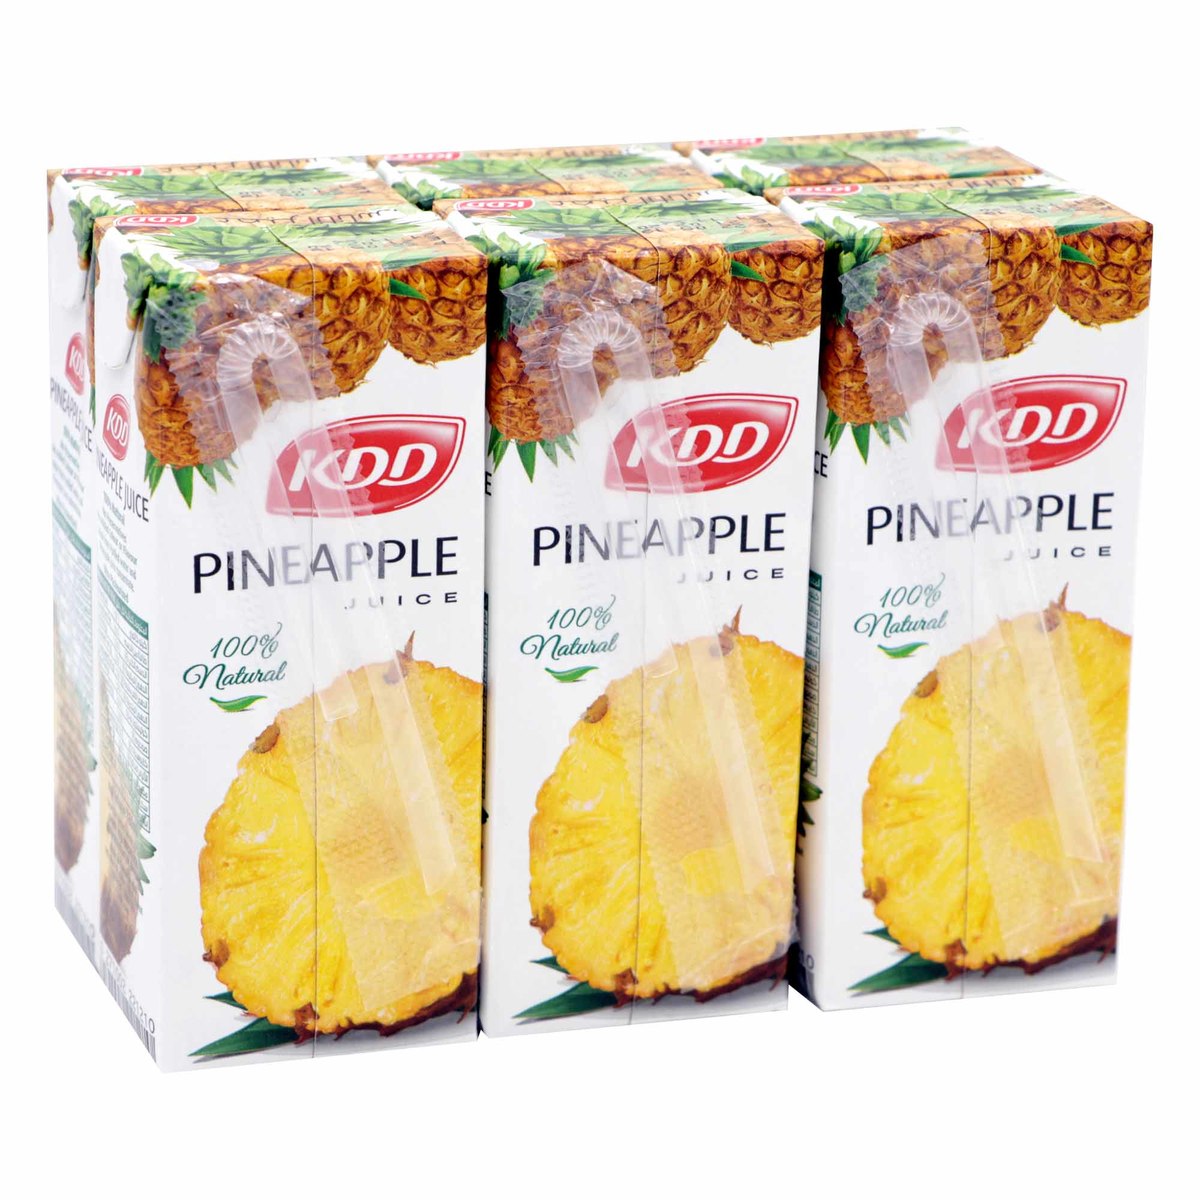 KDD Pineapple Juice 6 x 180ml